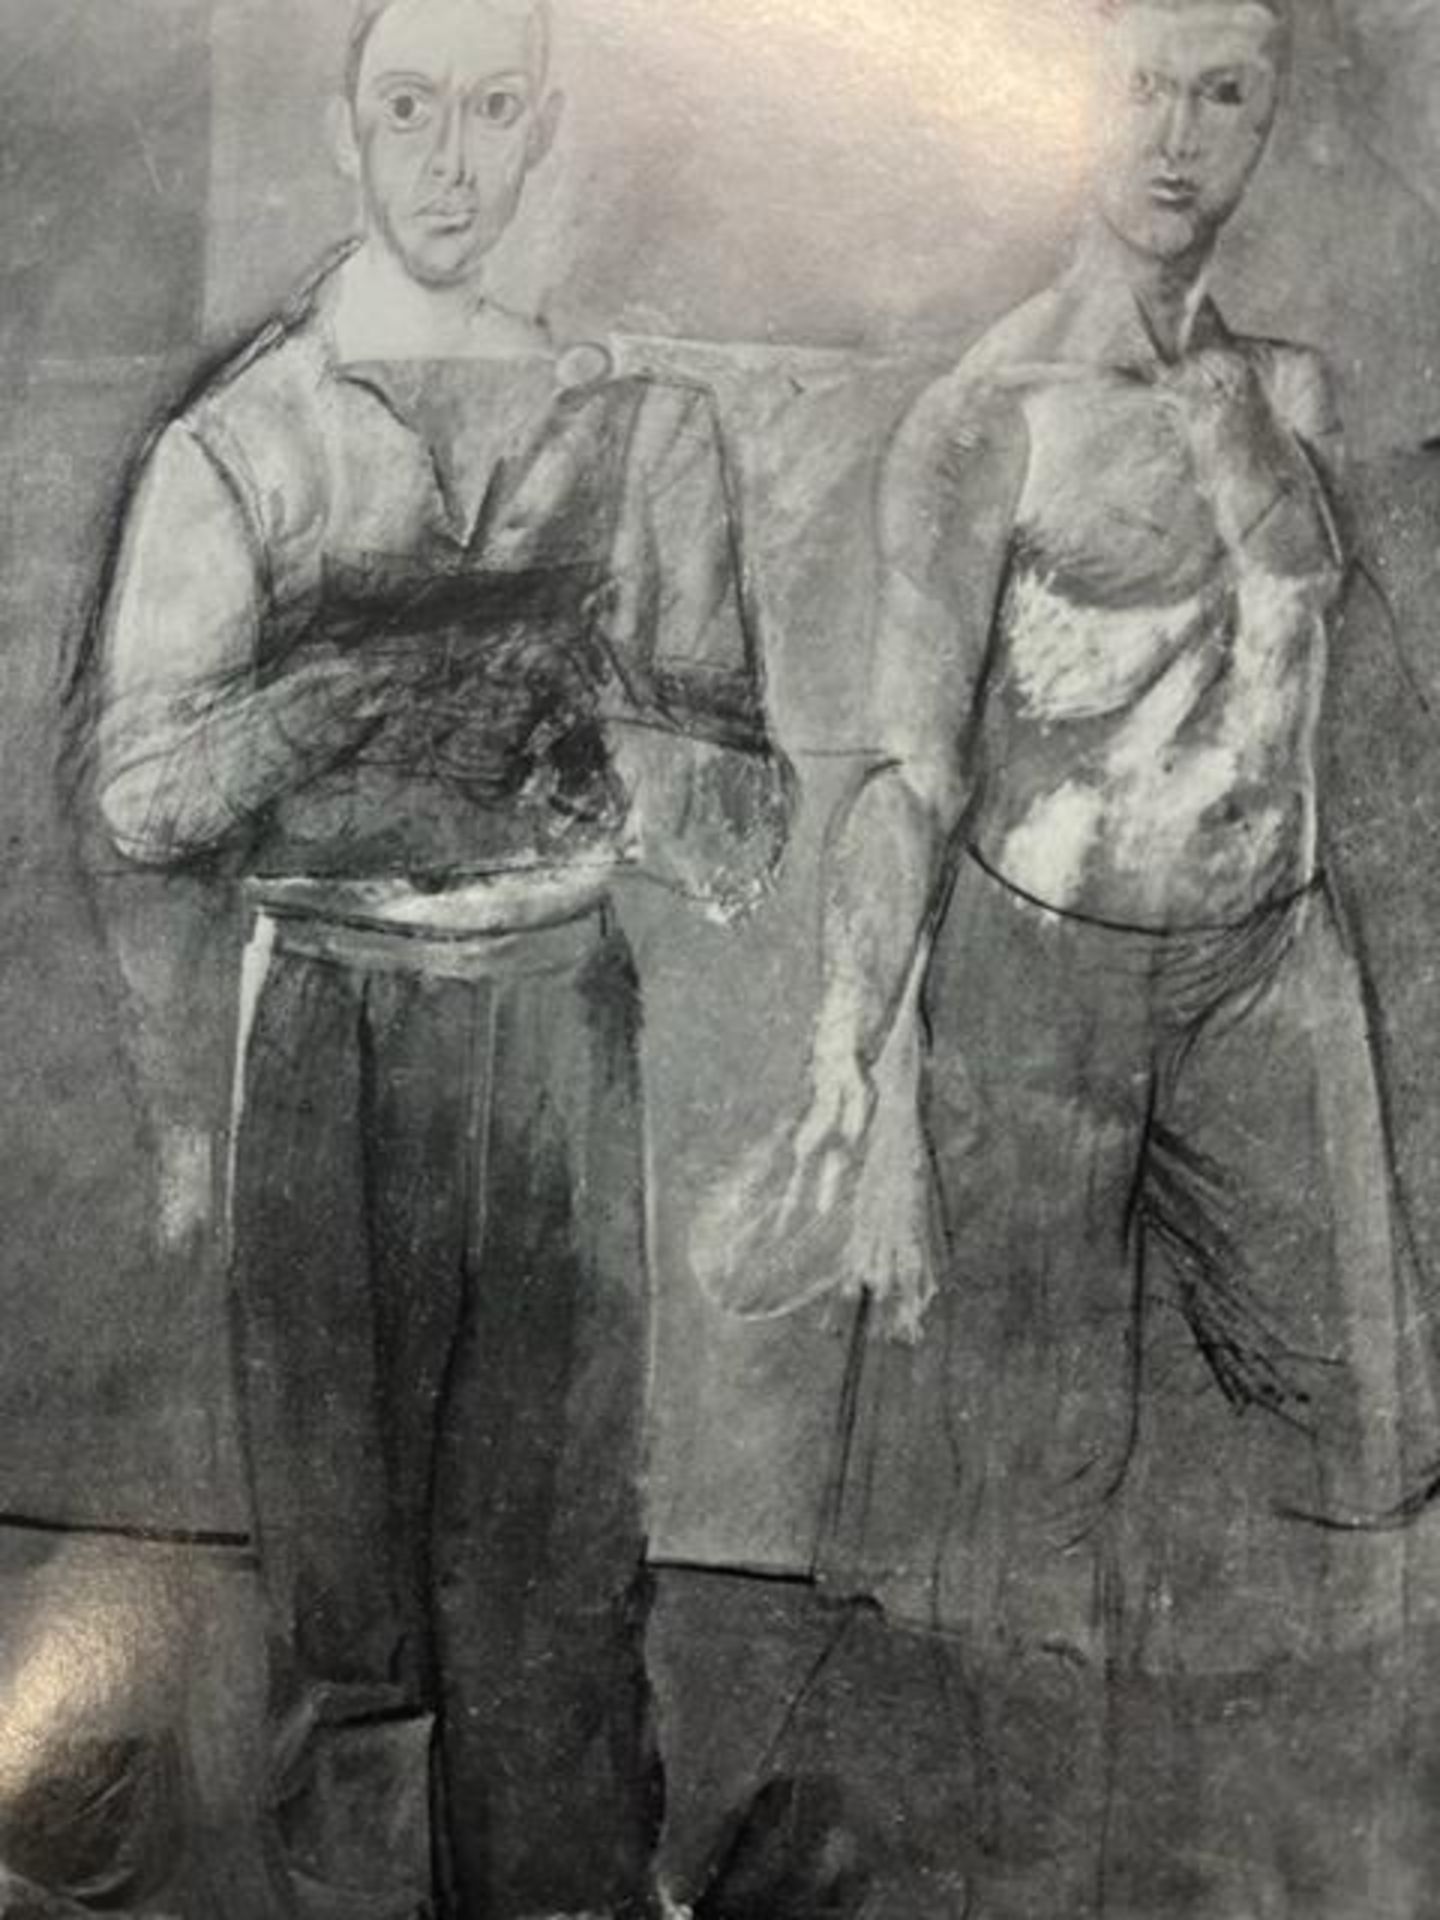 Willem de Kooning "Two Men Standing" Print. - Image 5 of 6